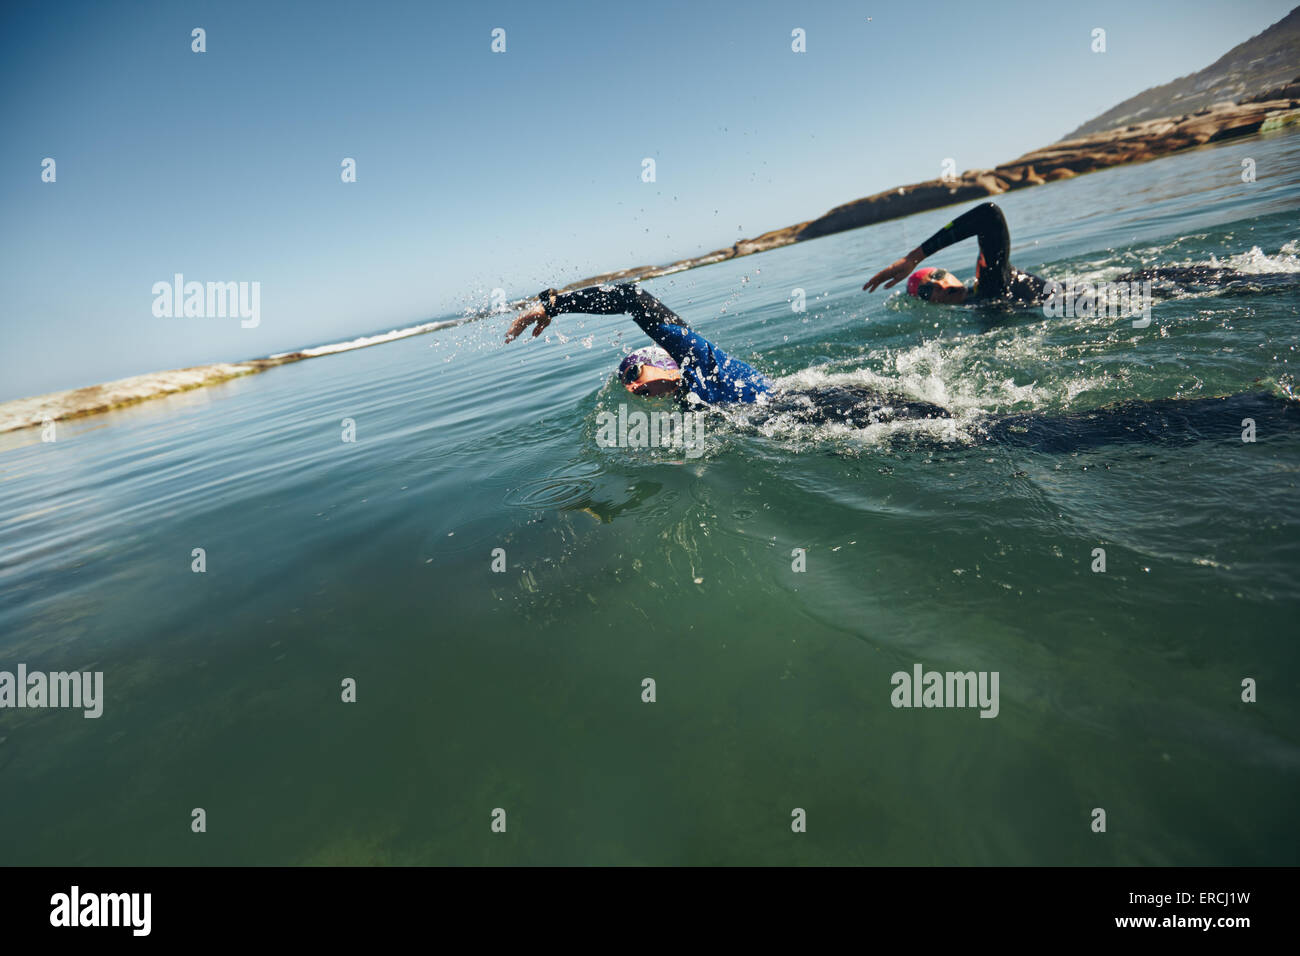 Athleten auf den triathletic Wettbewerb schwimmen. Wettbewerber schwimmt im Wasser Freestyle. Stockfoto